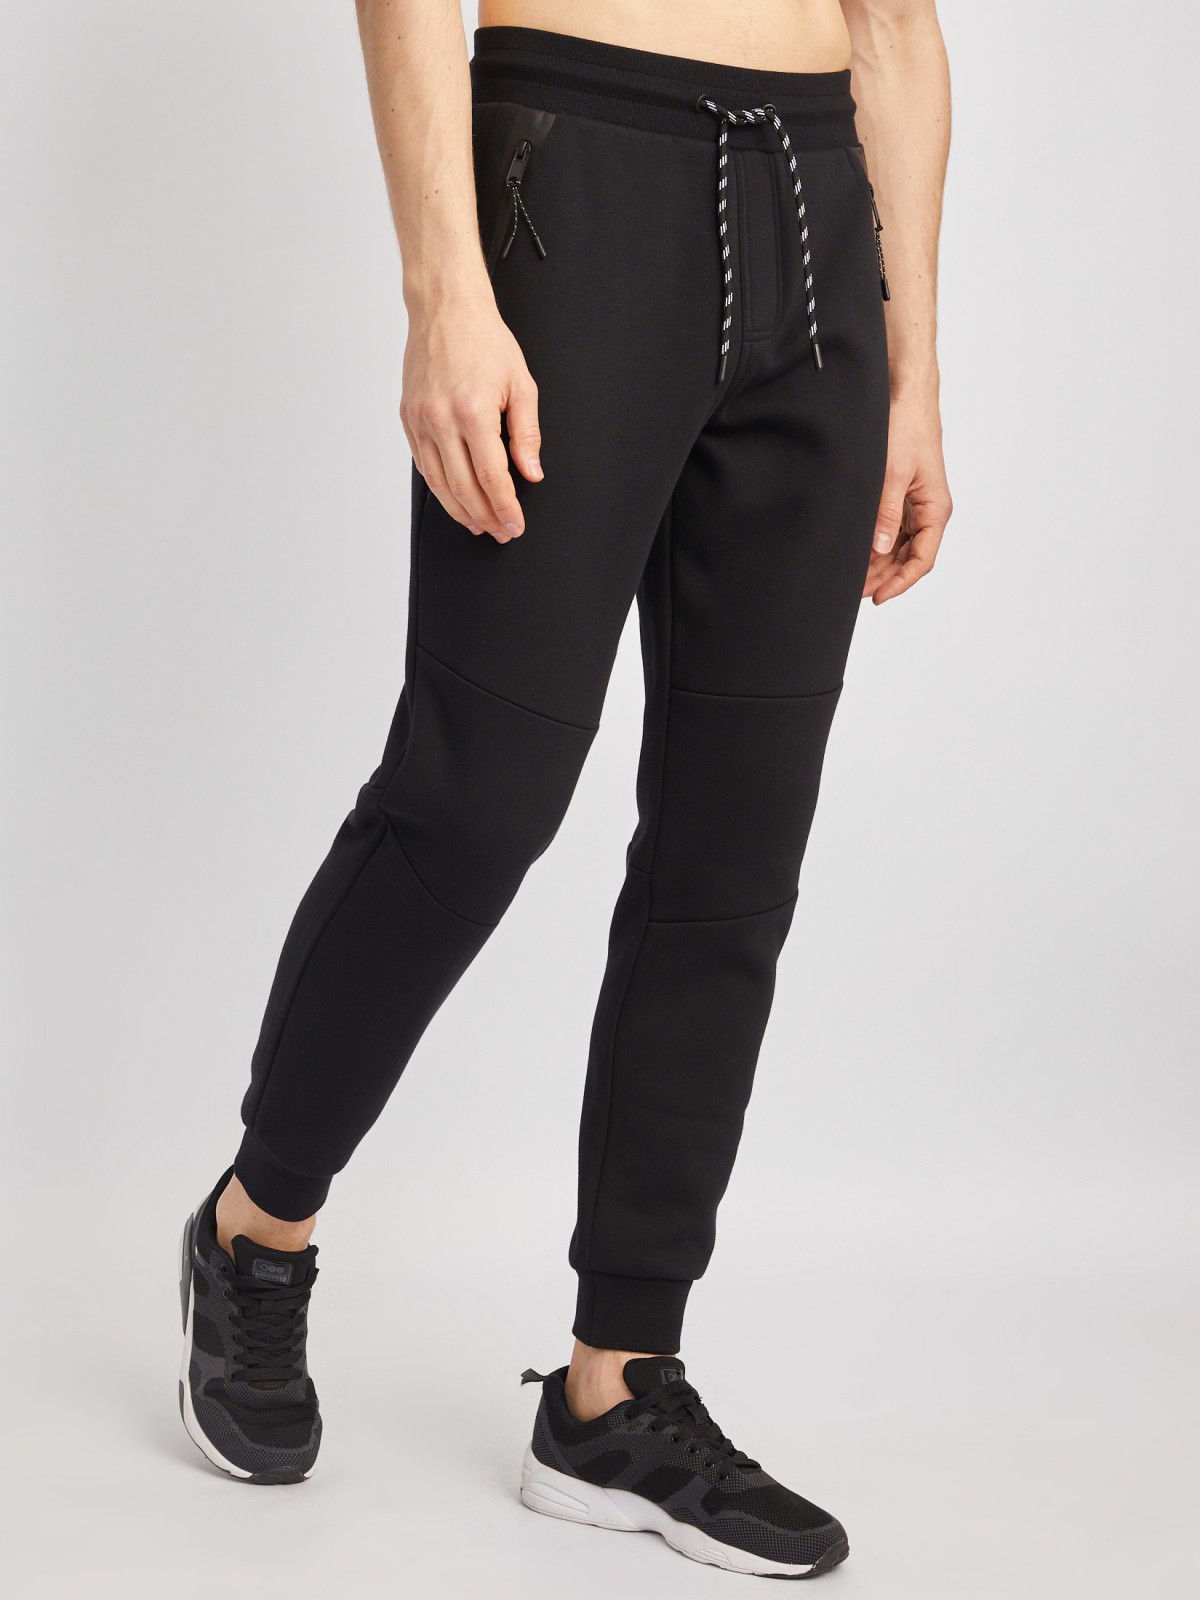 Утеплённые трикотажные брюки-джоггеры в спортивном стиле zolla 014117660063, цвет черный, размер S - фото 3